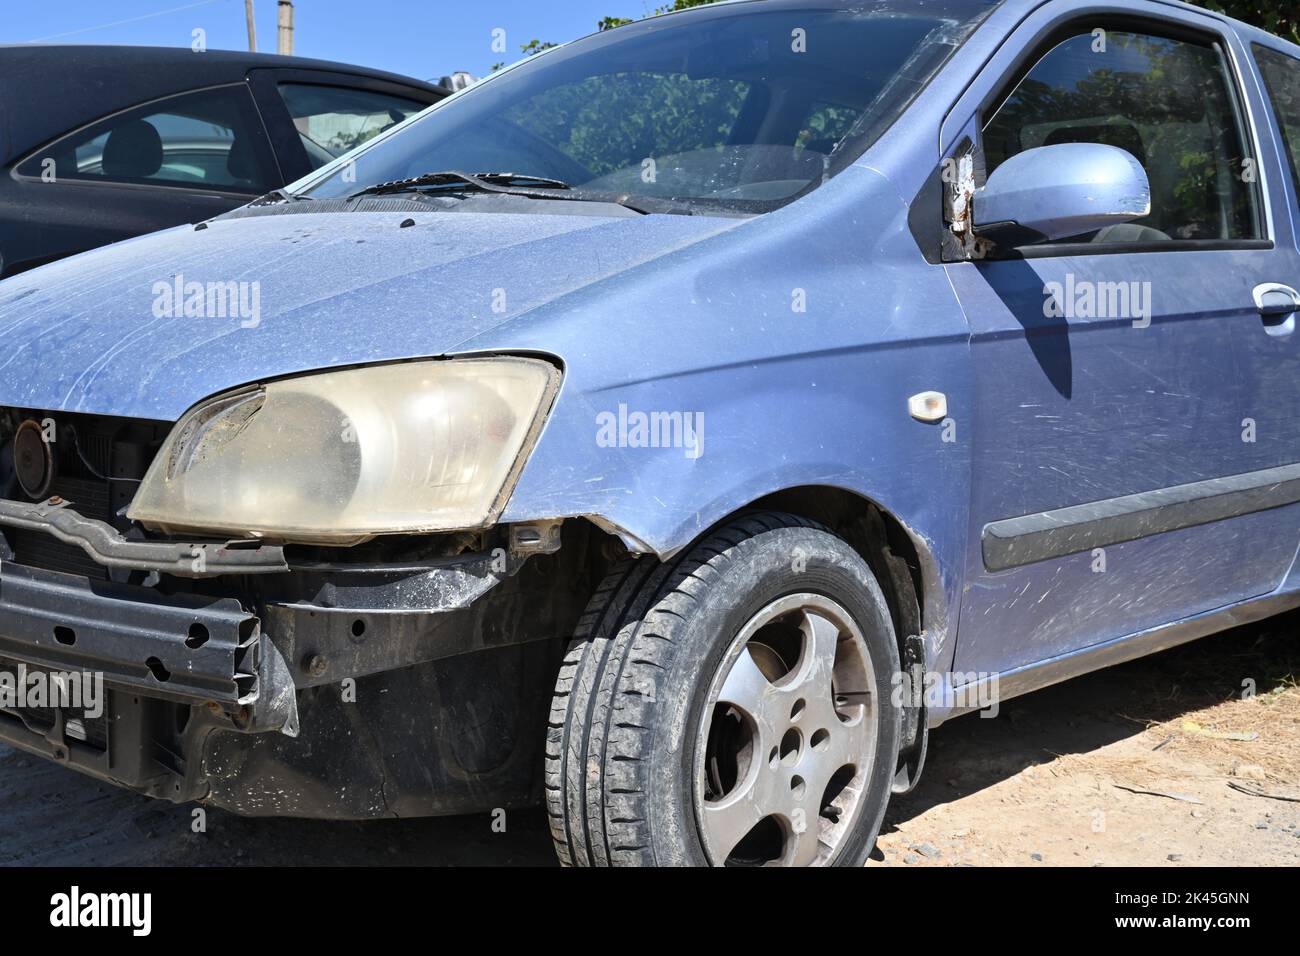 Vista dei danni alla vettura nella parte anteriore del veicolo. Il parafango, il paraurti, la luce alogena e lo specchietto retrovisore esterno sono rotti. Foto Stock